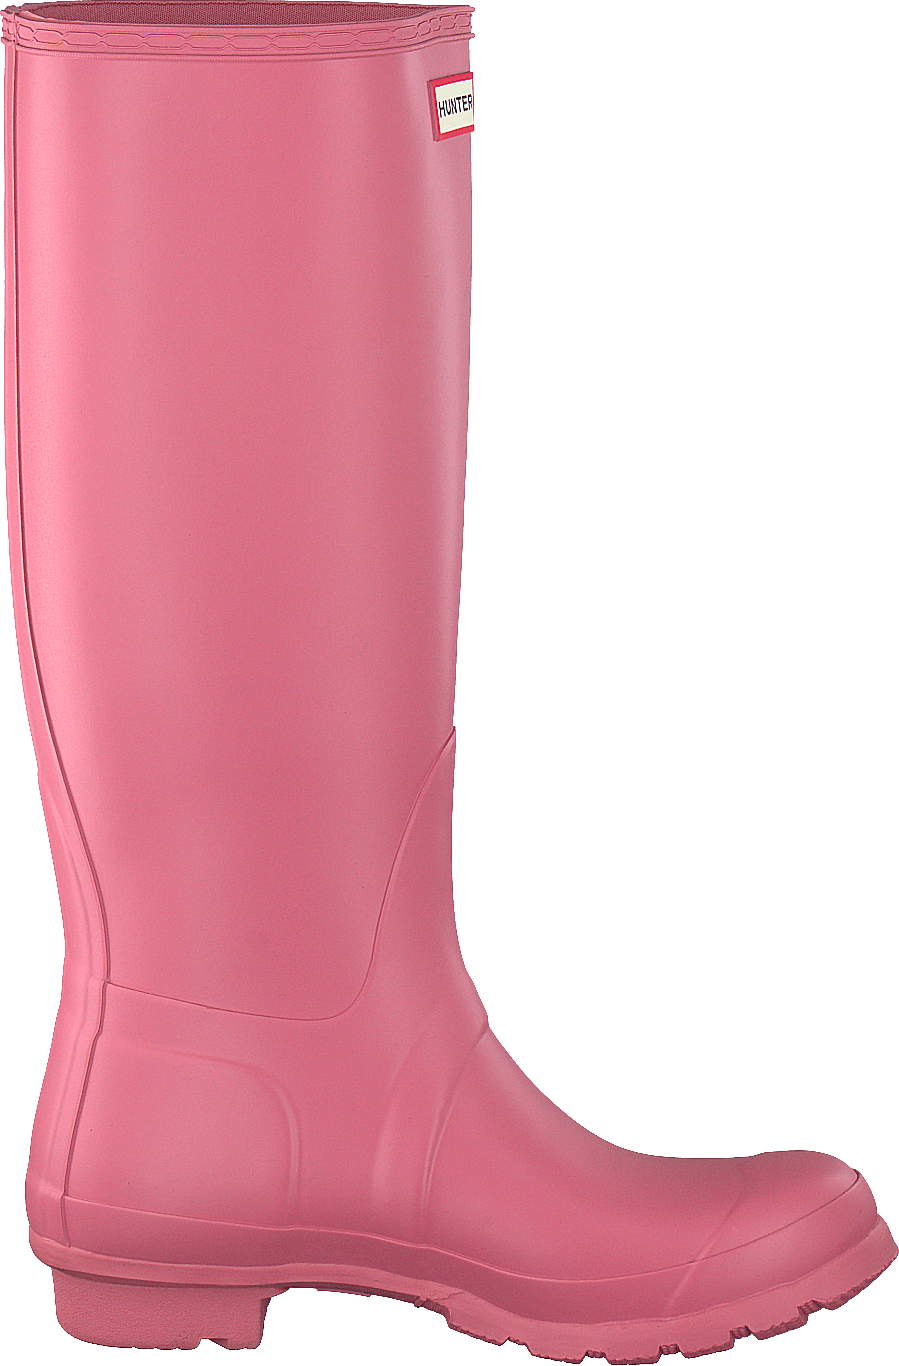 Women's Orig Tall Rhodonite Pink